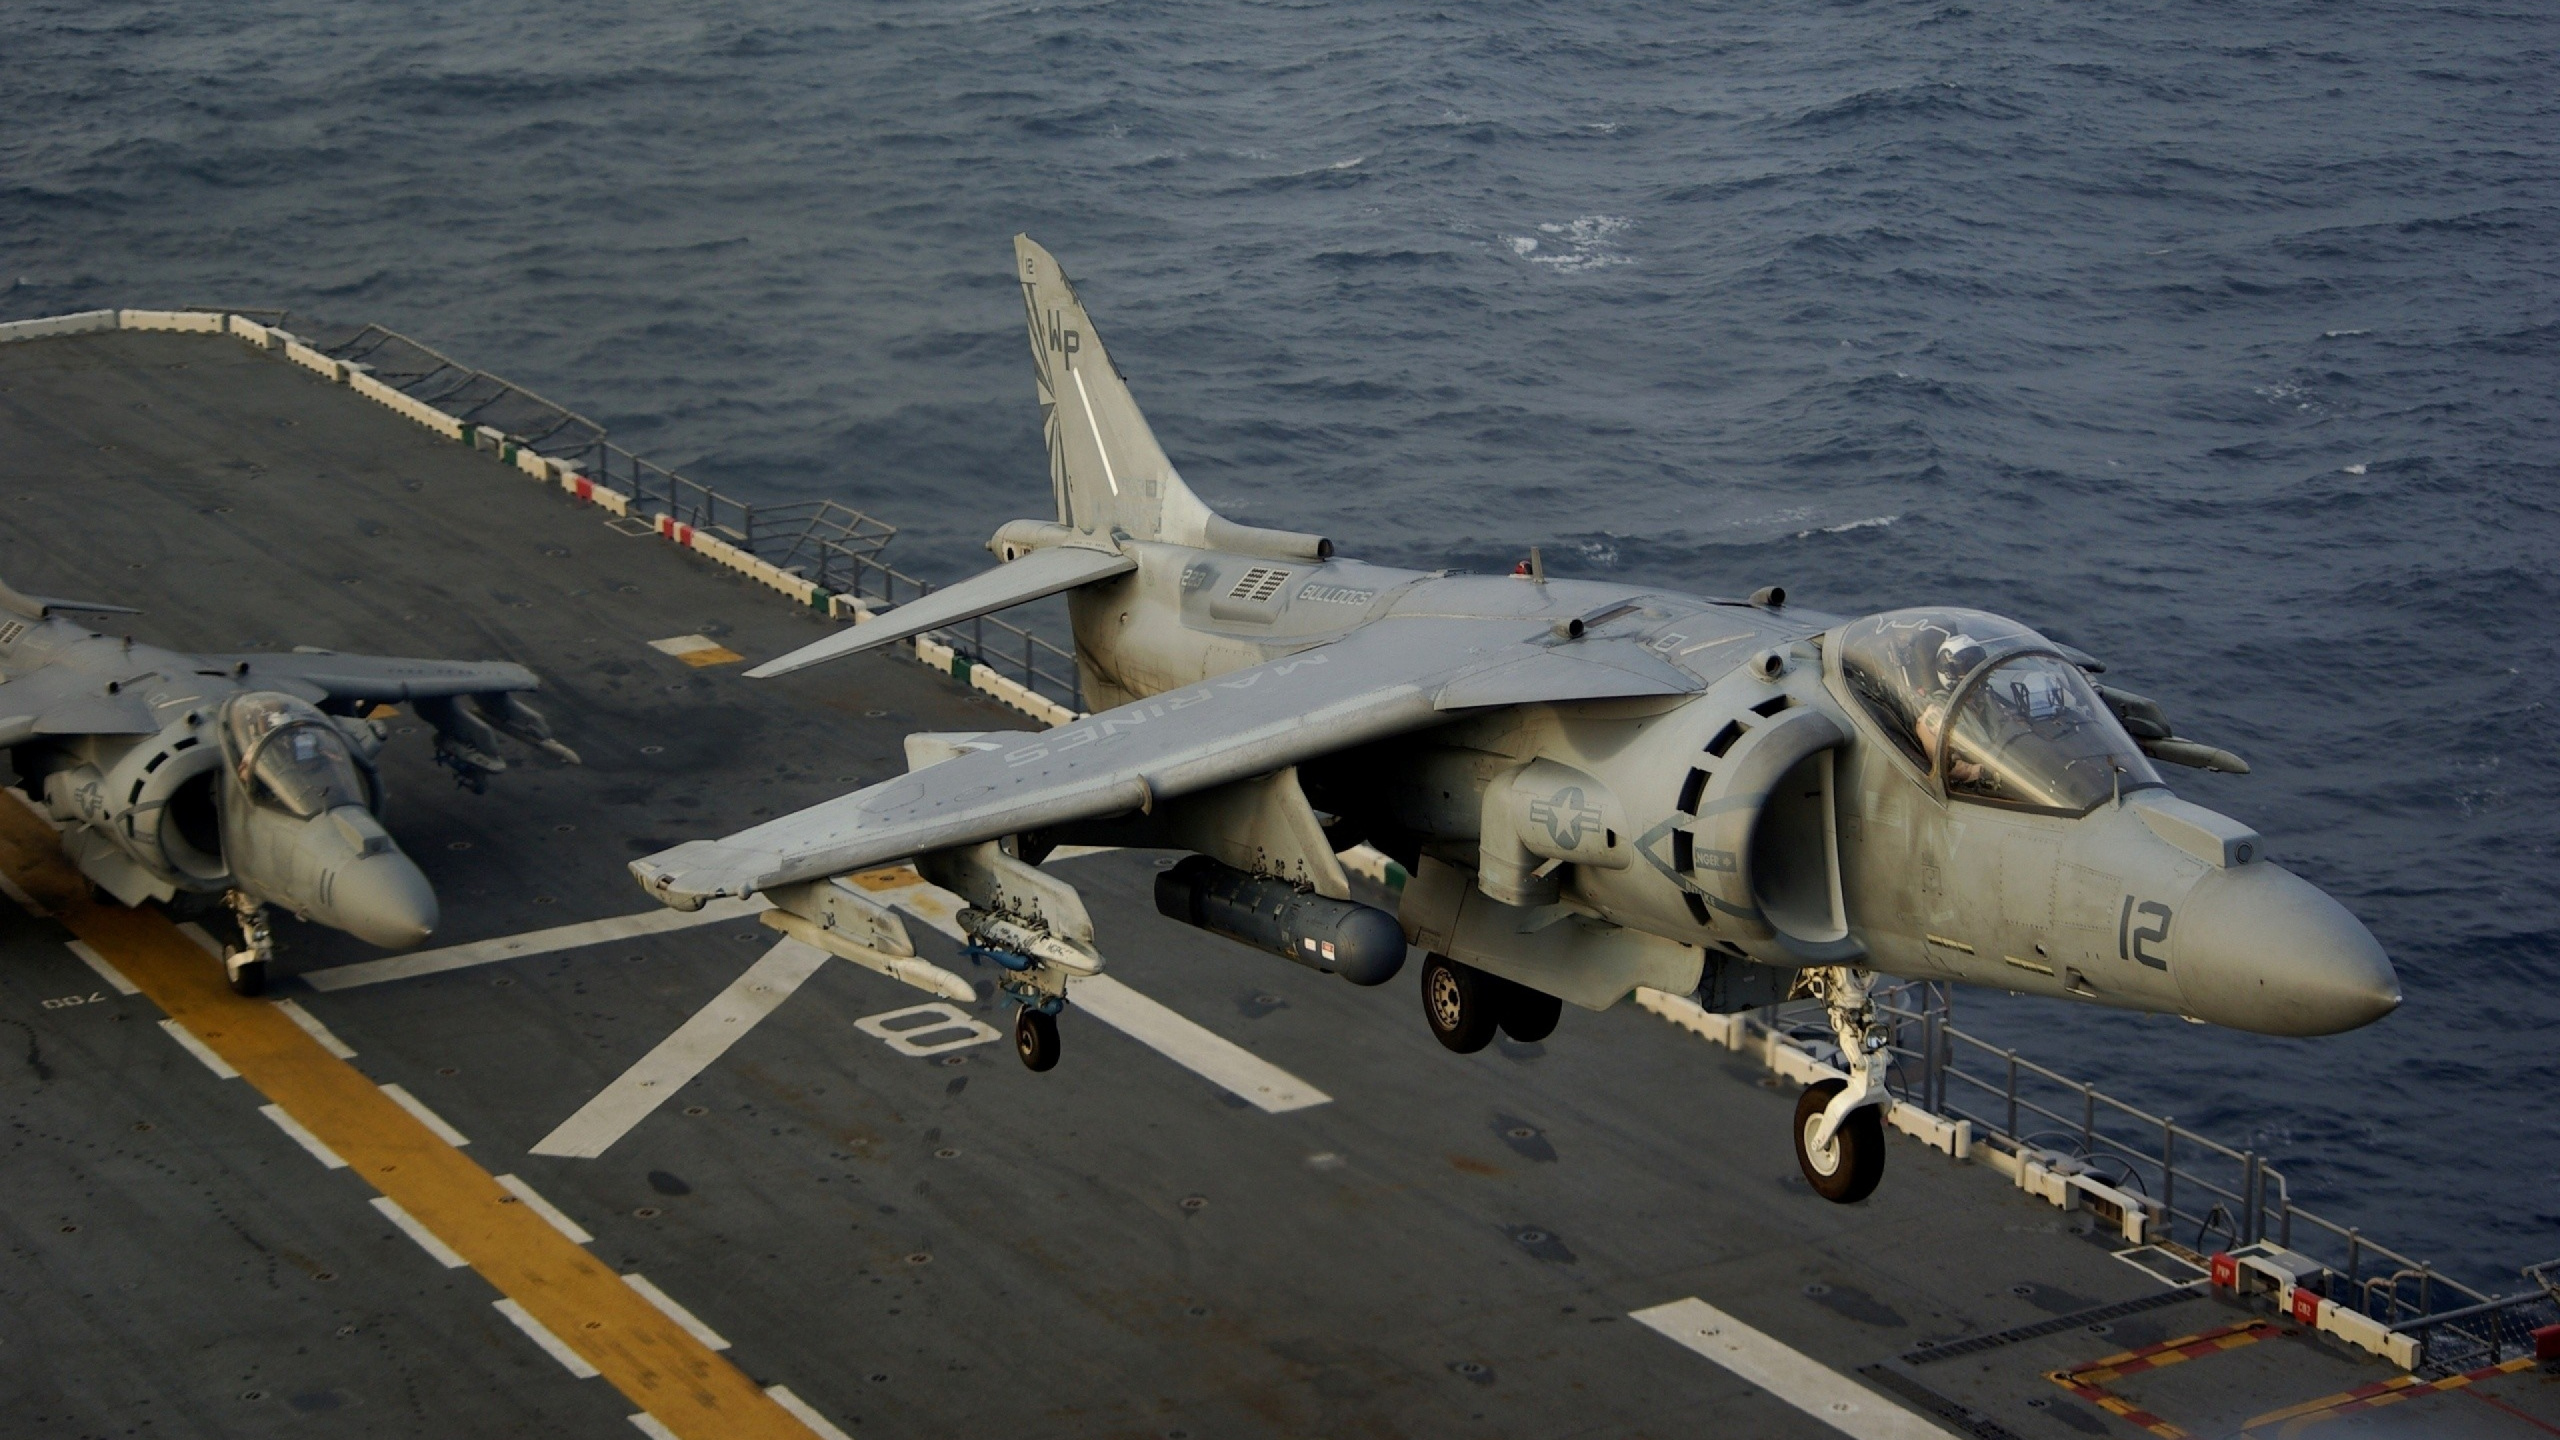 霍克*西德利鹞, 麦克道格拉斯AV-8B Harrier II, 鹞跳喷, 喷气式飞机, 军用飞机 壁纸 2560x1440 允许